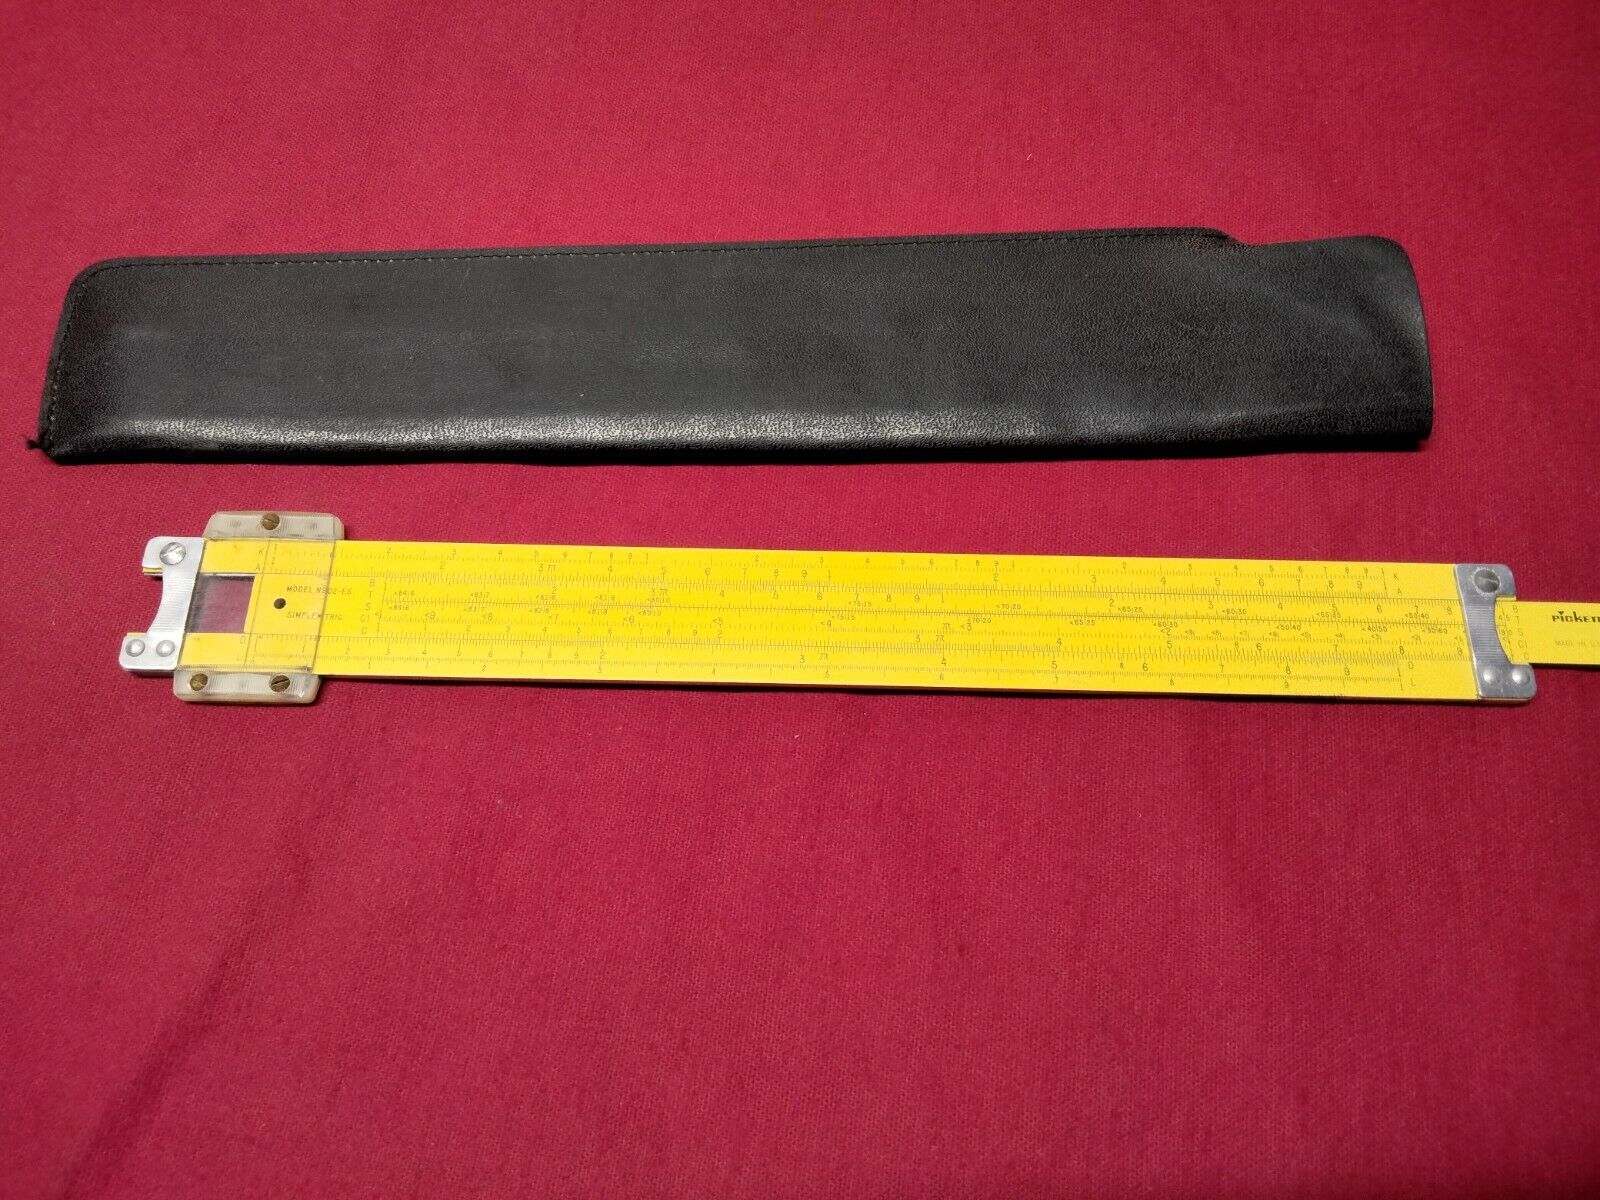 Vintage Pickett All Metal Slide Rule ~ MODEL N902-ES Simplex Trig + Leather Case